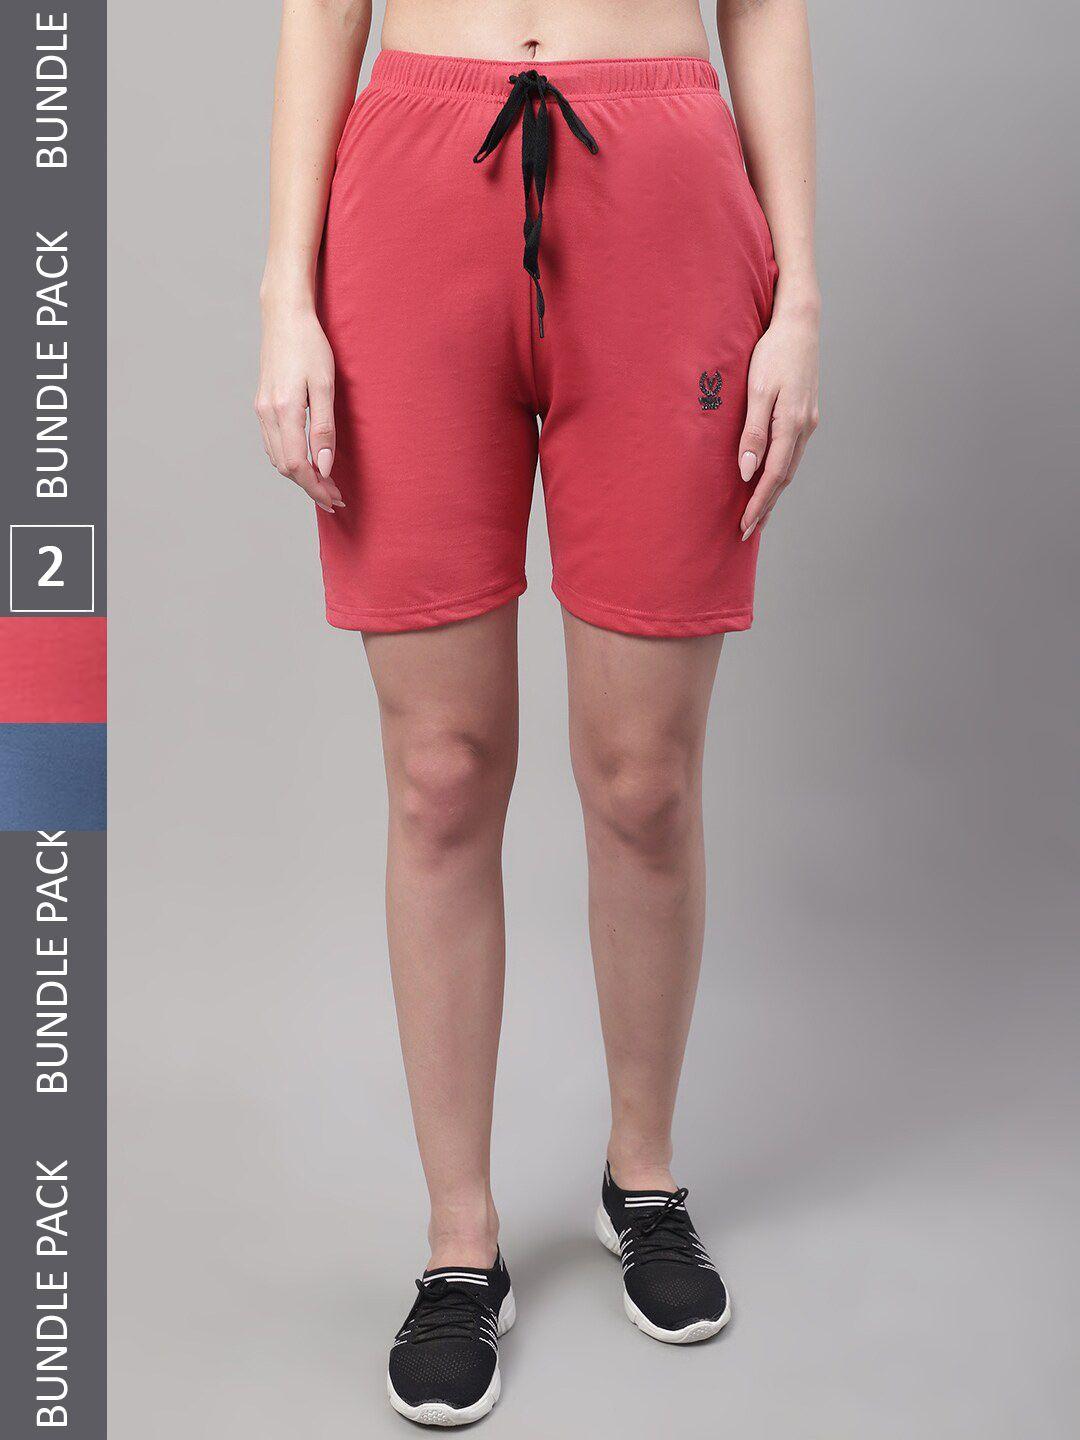 vimal jonney women multicoloured shorts